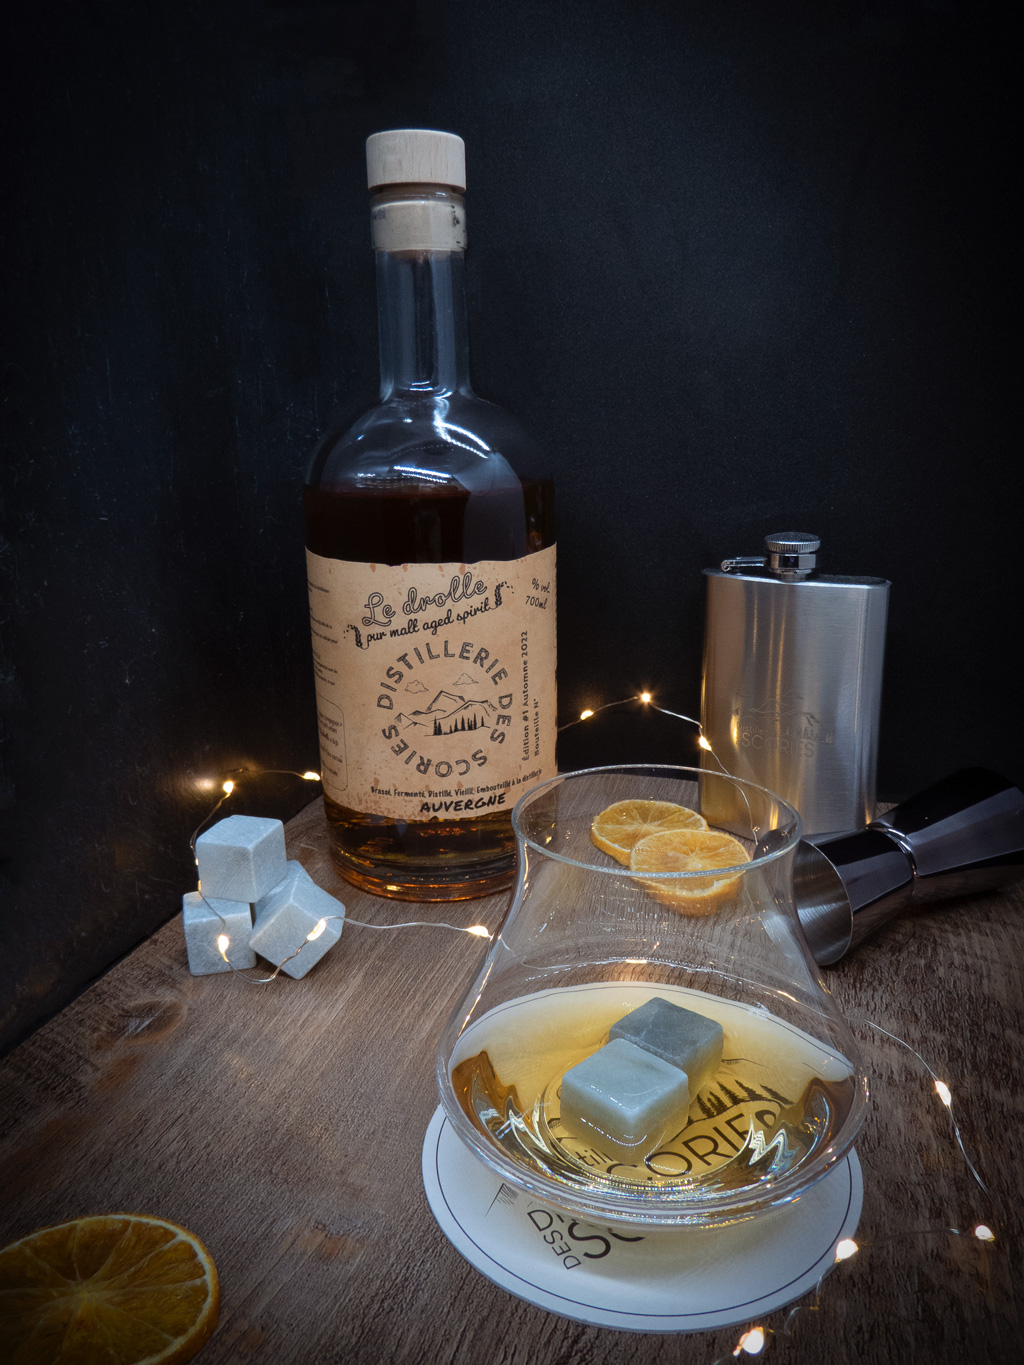 Pur malt en bouteille présenté servi dans un verre à whisky dans une ambiance feutrée et chaleureuse